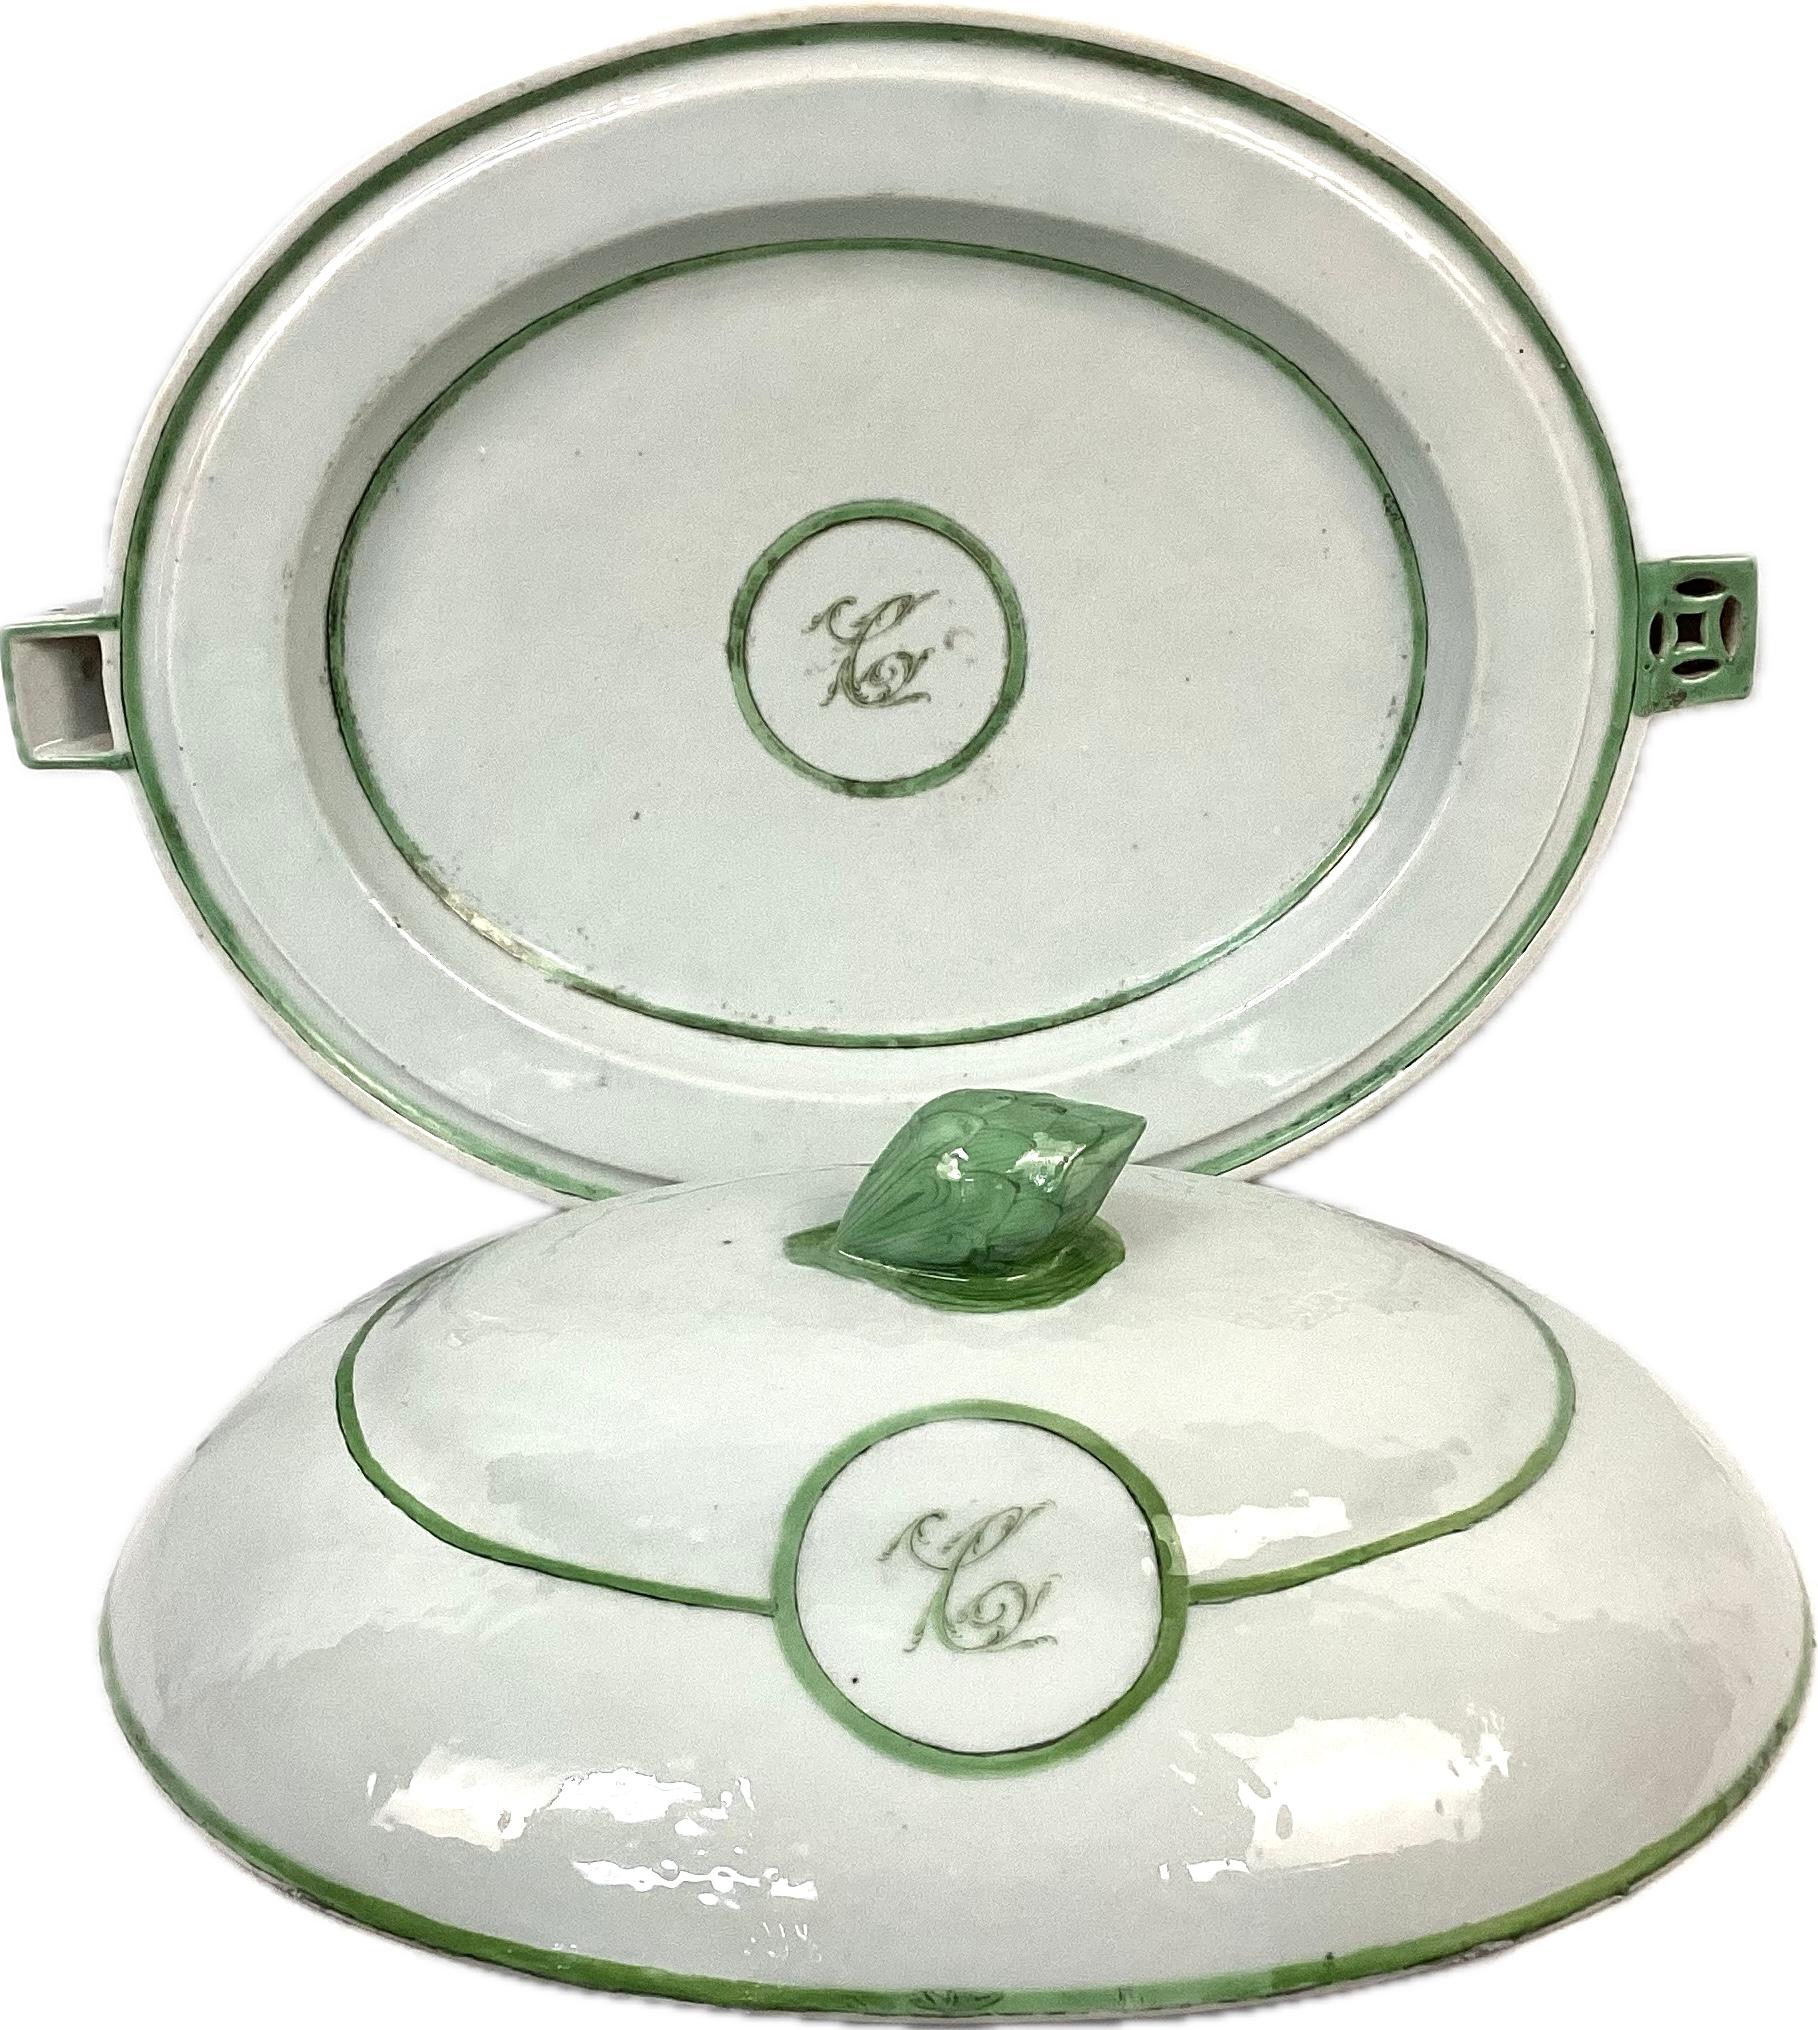 Une trouvaille rare ! Grand plat chauffant en porcelaine d'exportation chinoise du 19e siècle avec couvercle. Le couvercle est muni d'une poignée en porcelaine verte en forme d'artichaut. De belles couleurs vertes et blanches avec des fleurs vertes